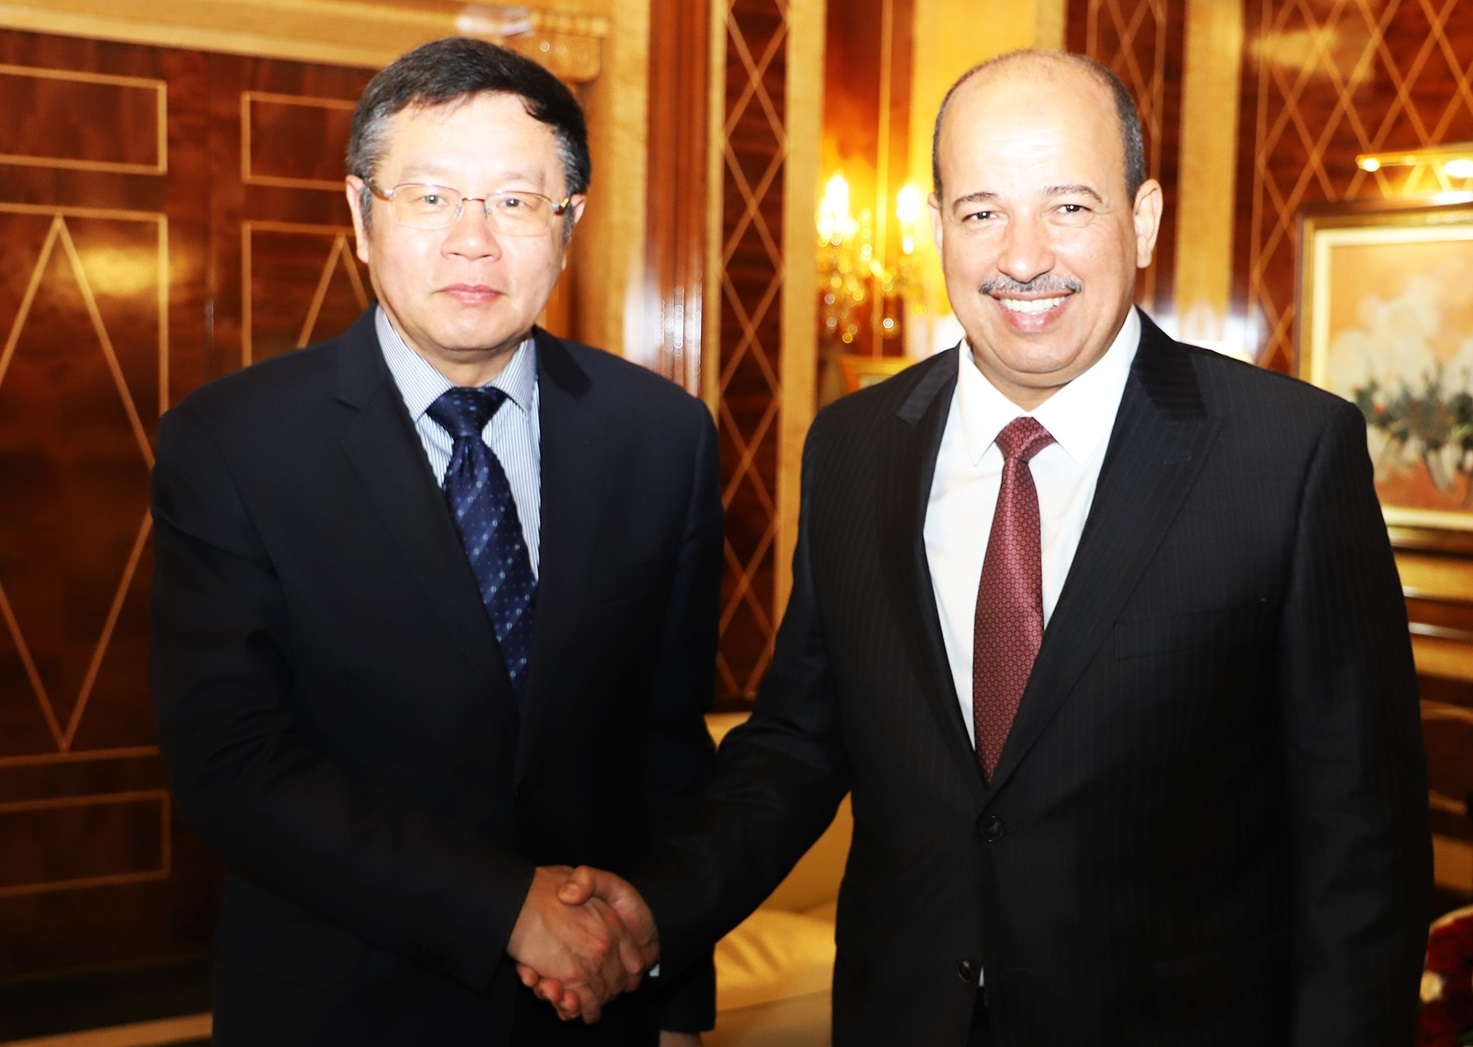 ميارة يبحث مع السفير الصيني سبل تعزيز التعاون البرلماني بين البلدين